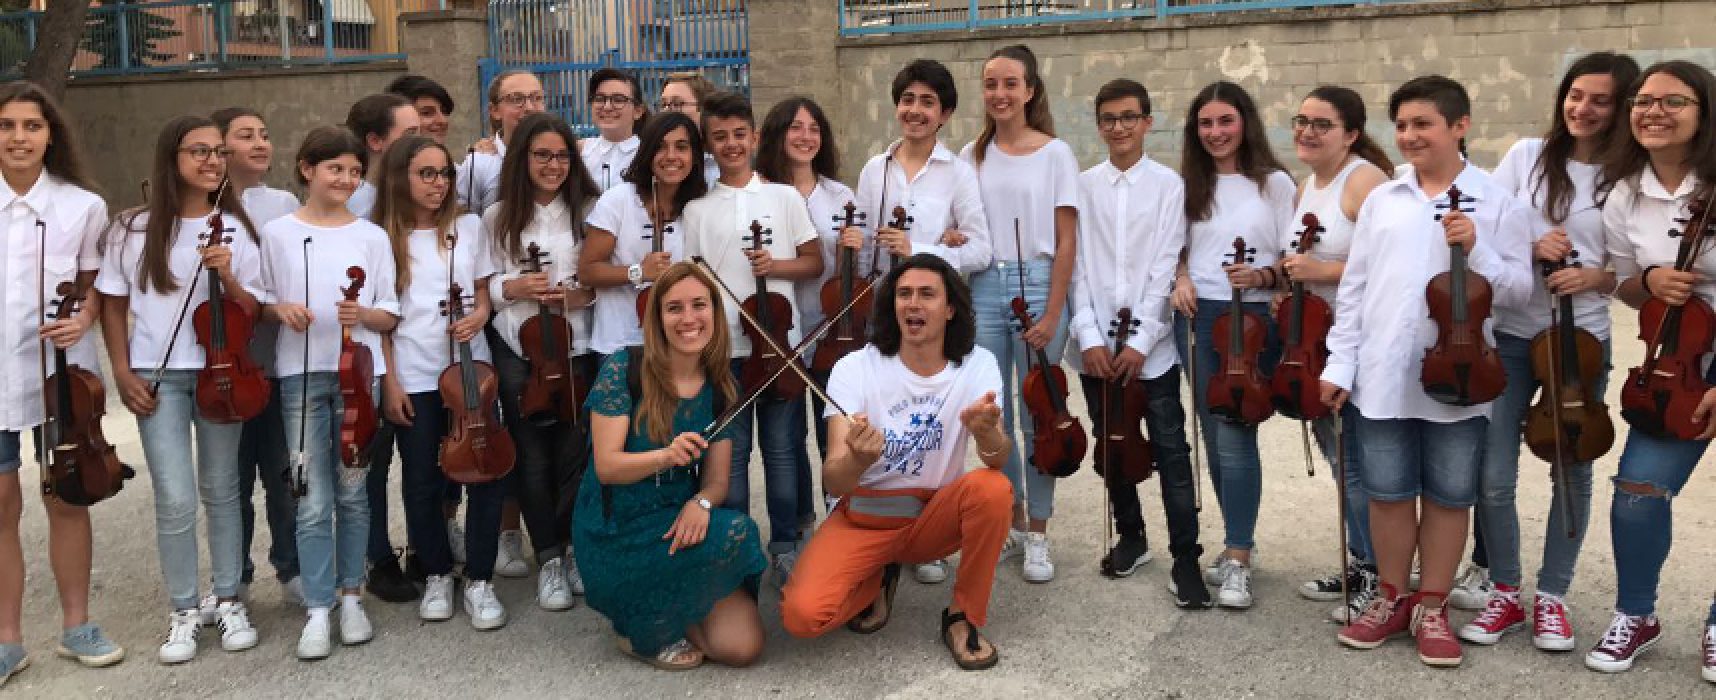 Gran finale d’anno scolastico in musica alla scuola media “Riccardo Monterisi” / FOTO